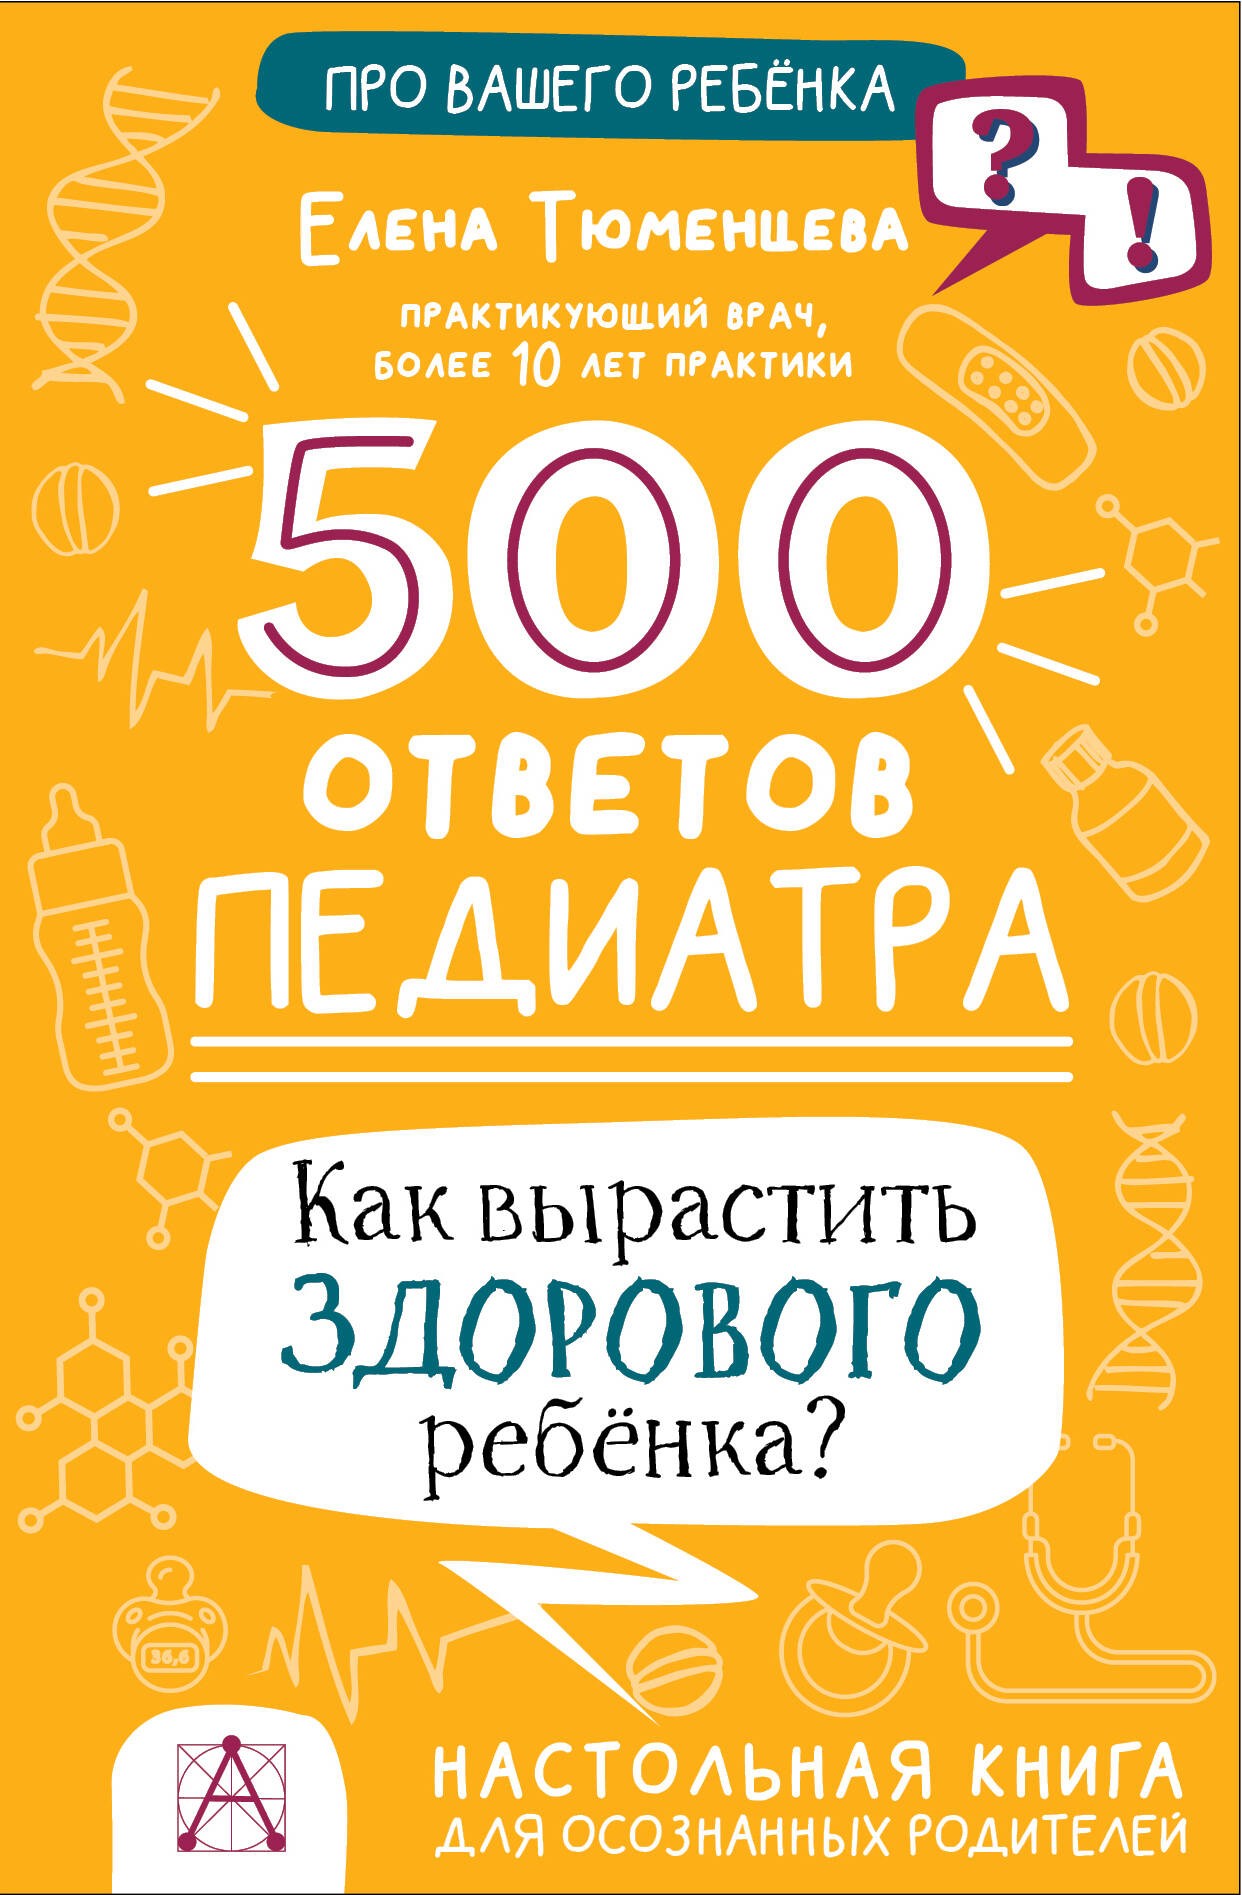 500 ответов педиатра